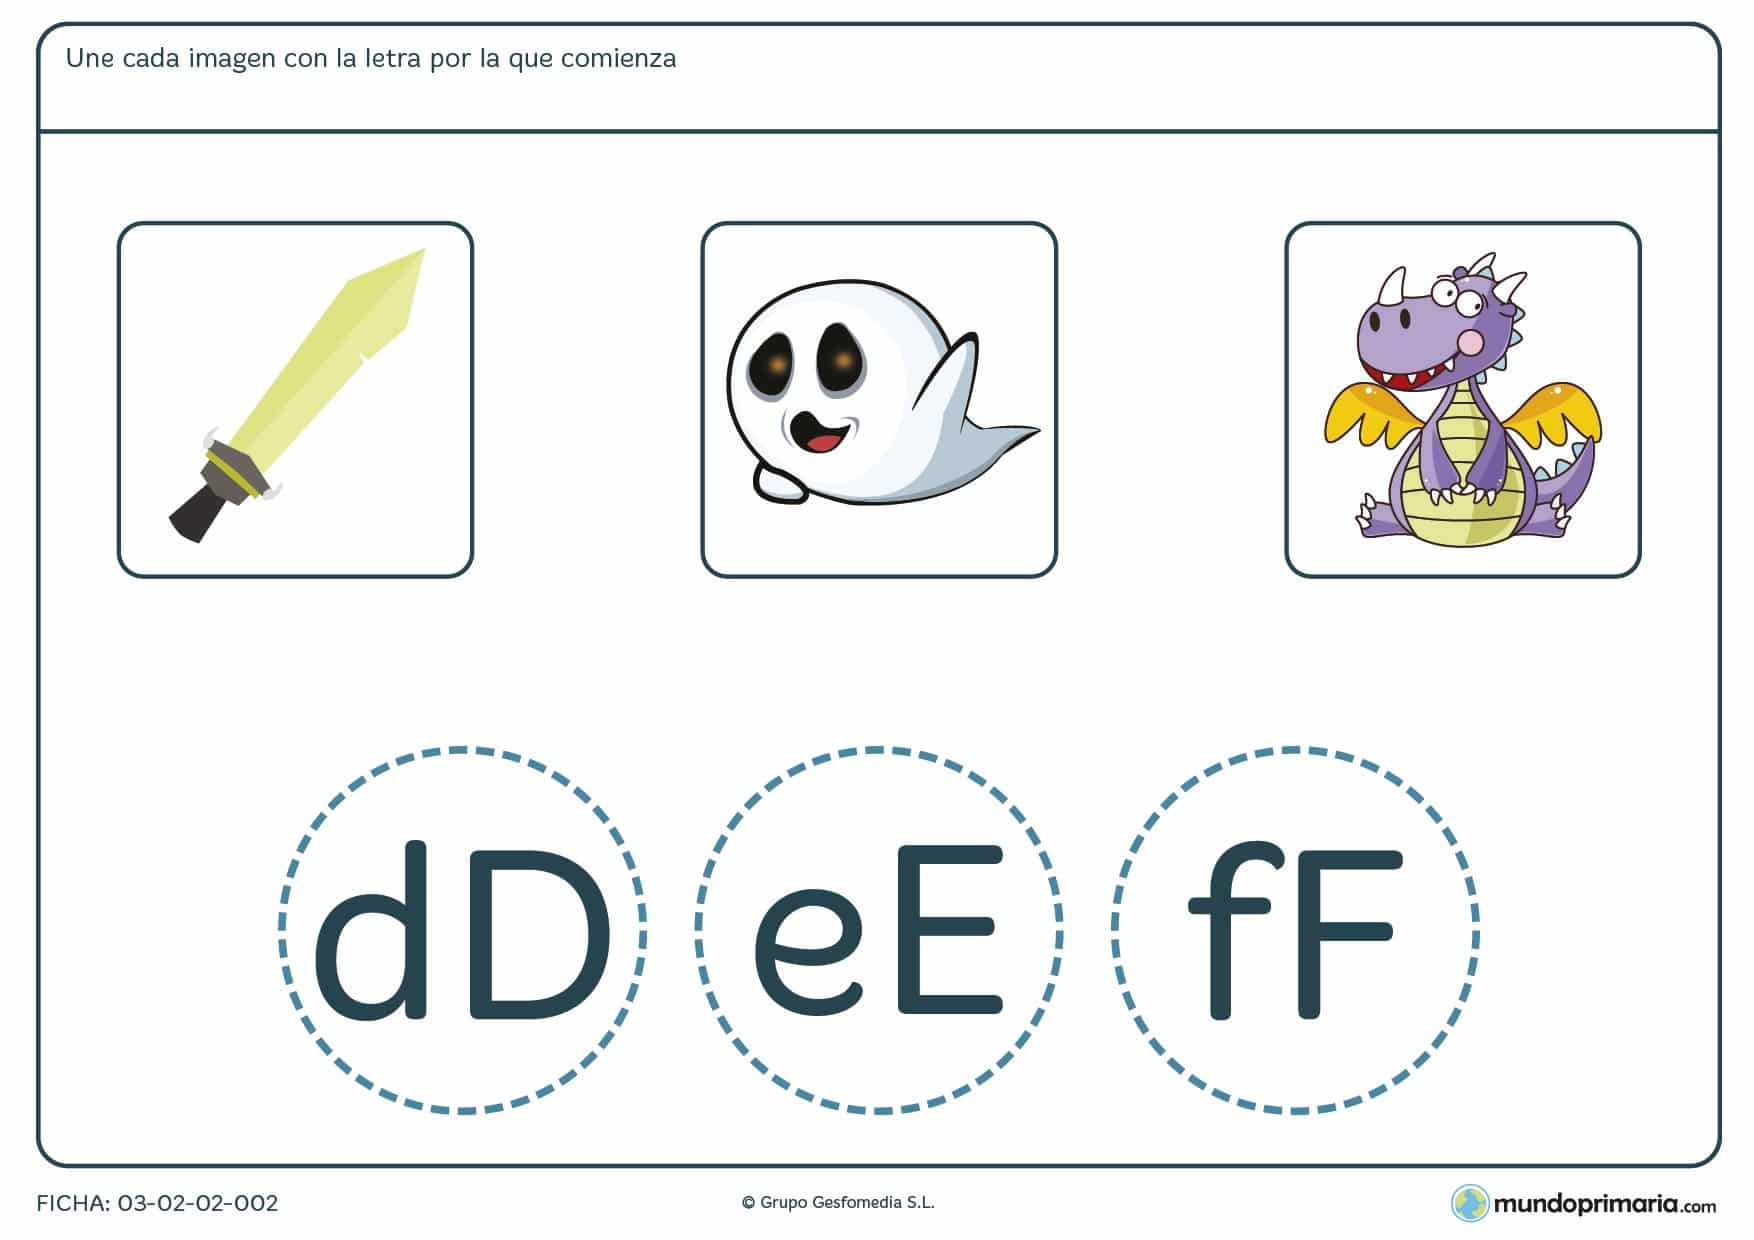 Ficha para desarrollar en los niños de primaria la capacidad de la escritura con ejercicios prácticos sobre las palabras